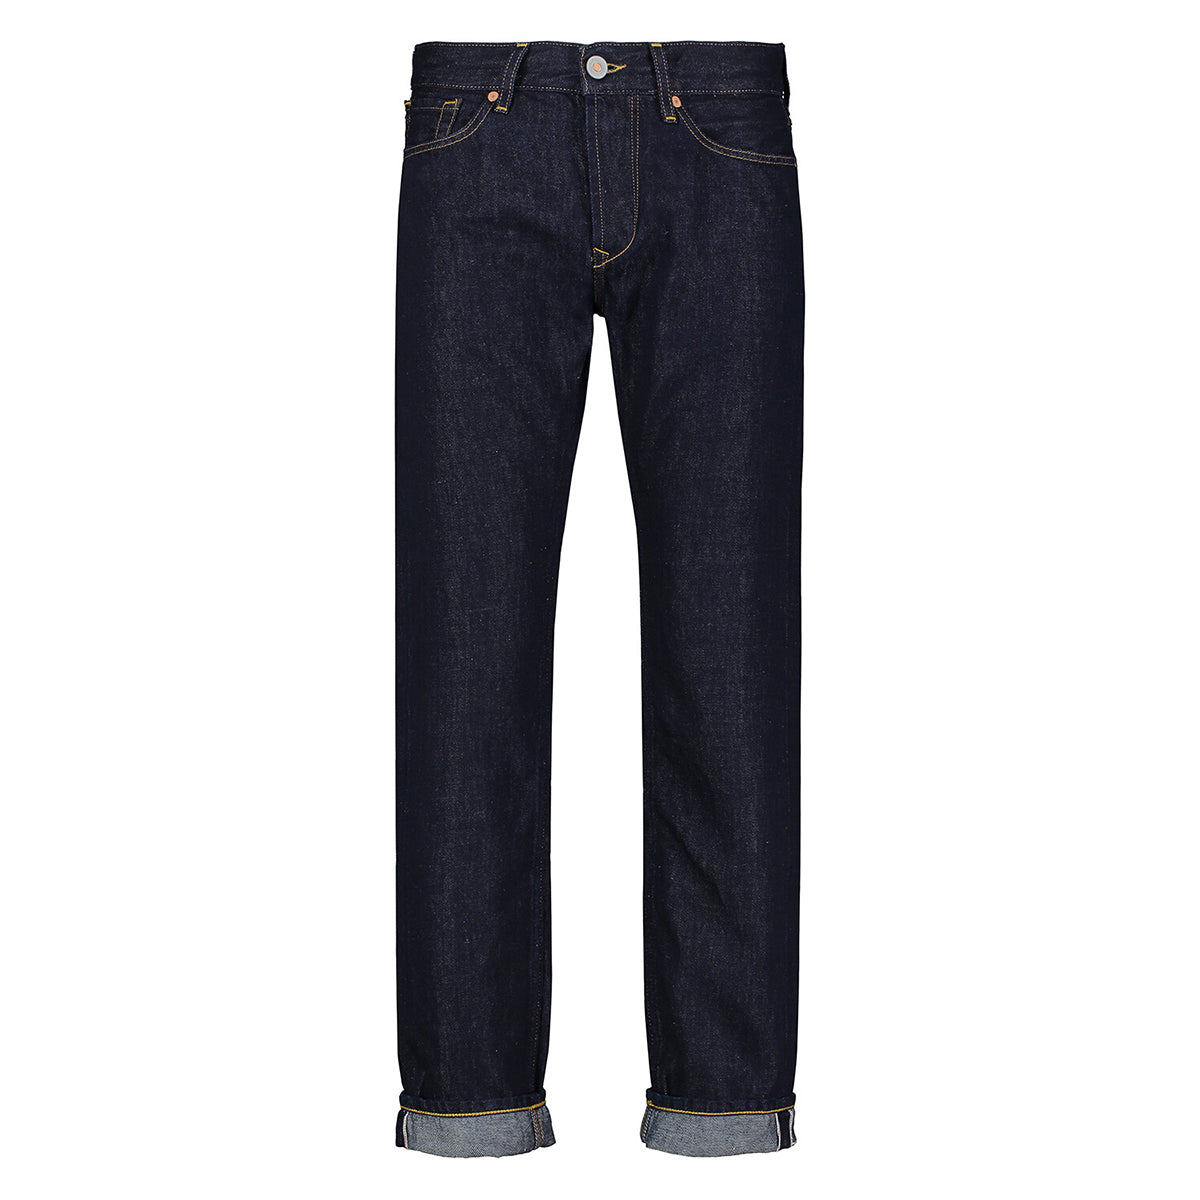 TELA - Jeans Cosmy 5 tasche Blue - COS0131118 - BLU